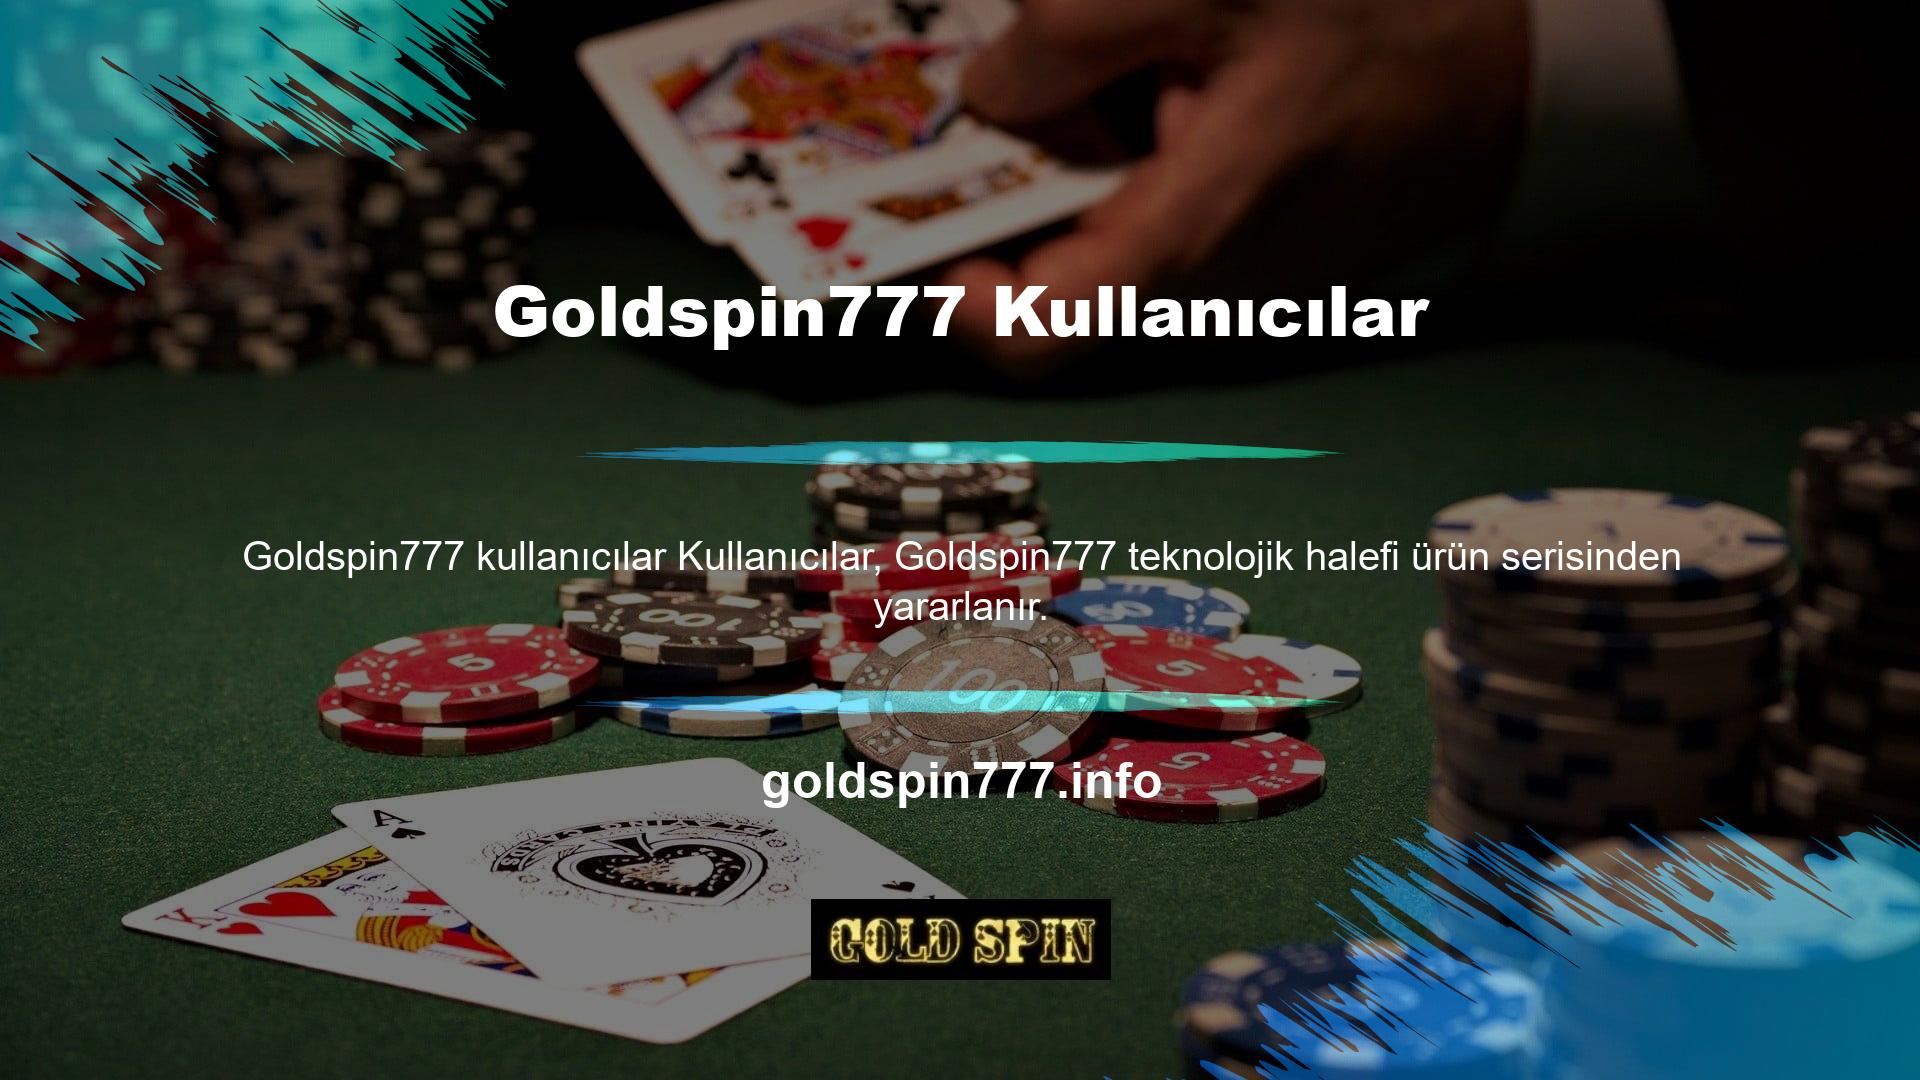 Goldspin777, oyun portföyünü ve yazılımını sürekli geliştirerek ve genişleterek, yüz binlerce kullanıcının çeşitli oyun türlerine bahis yaptığı sitelerden biri olma yolunda emin adımlarla ilerlemektedir